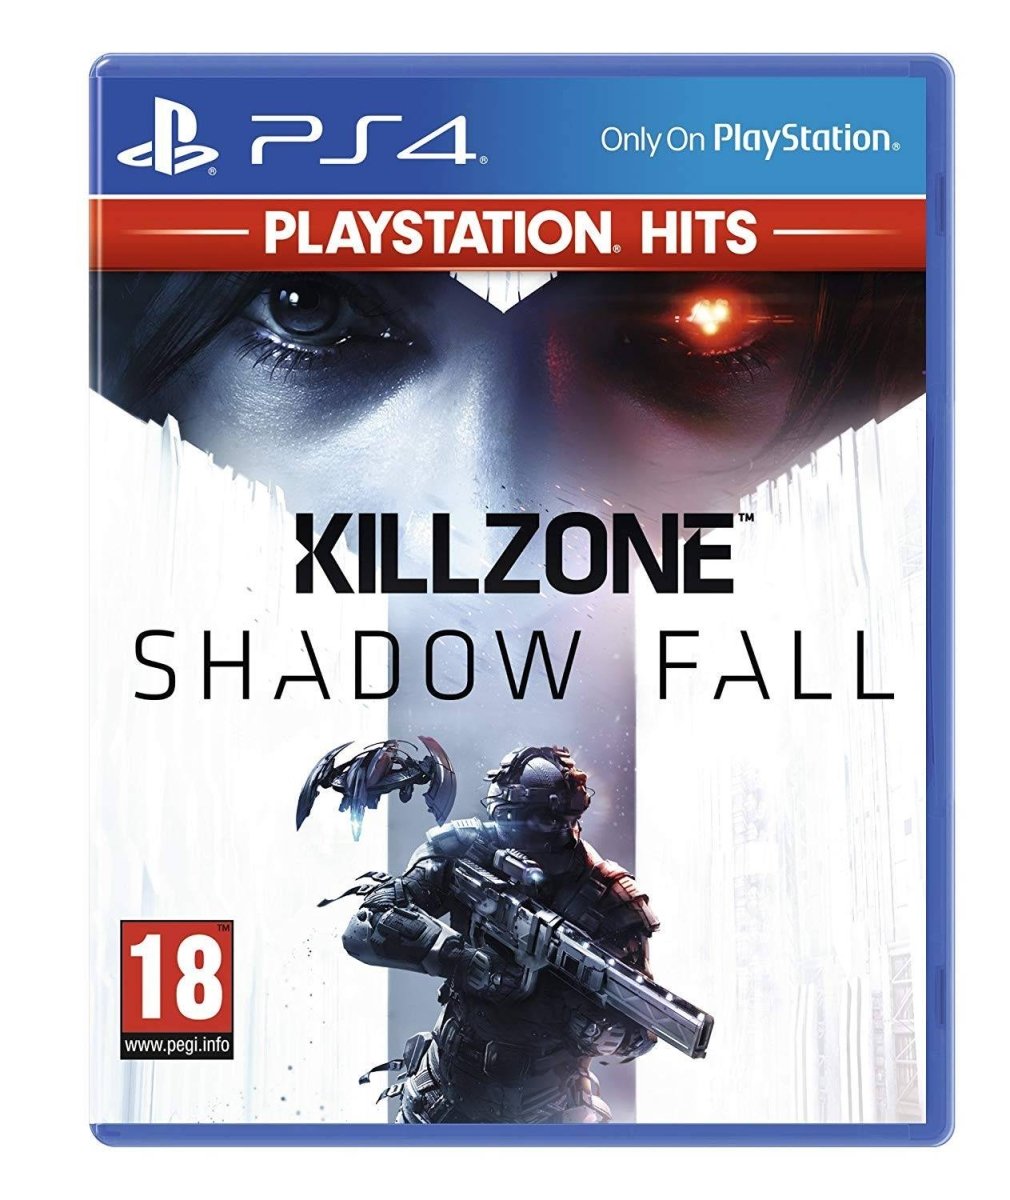 PlayStation Hits Killzone Shadow Fall - GameOn.games